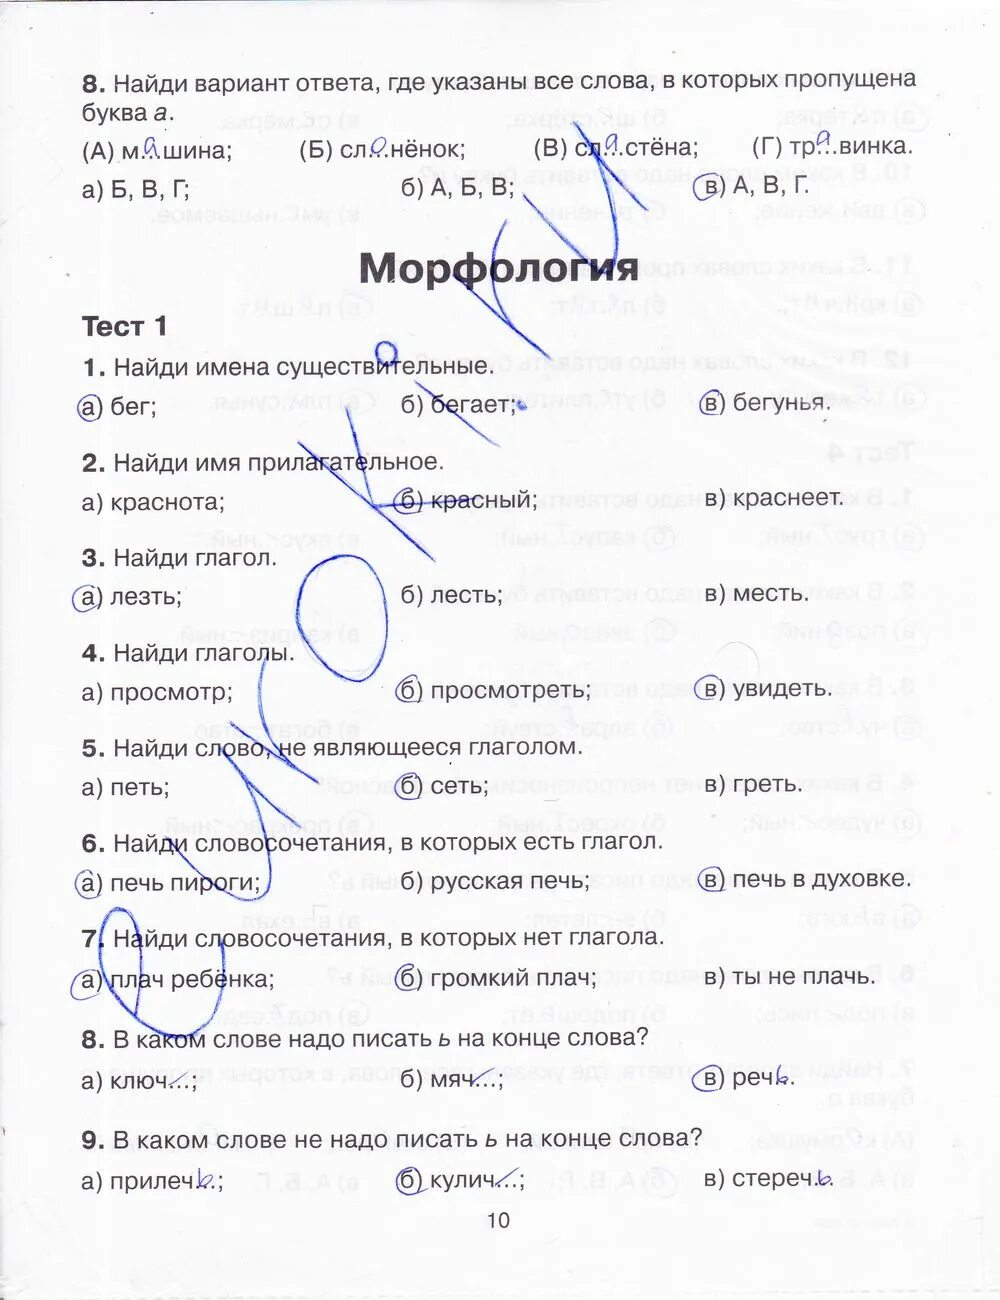 Домашнее задание ответы тренажер по русскому языку.